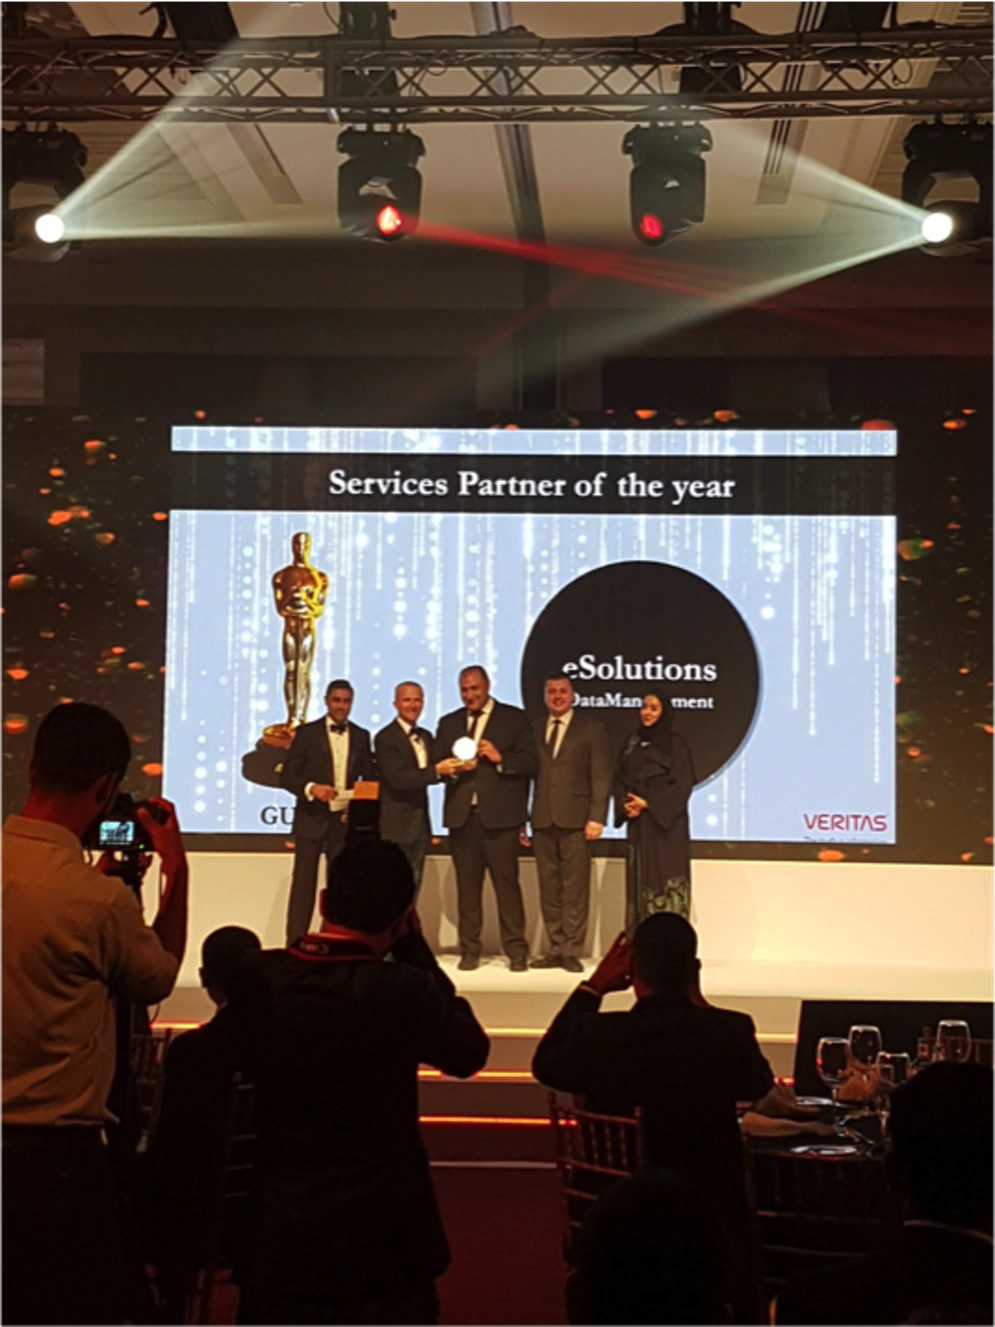 Le prix «Services Partner of the year» a été accordé par Veritas à eSolutions Data Management pour l'année 2018.